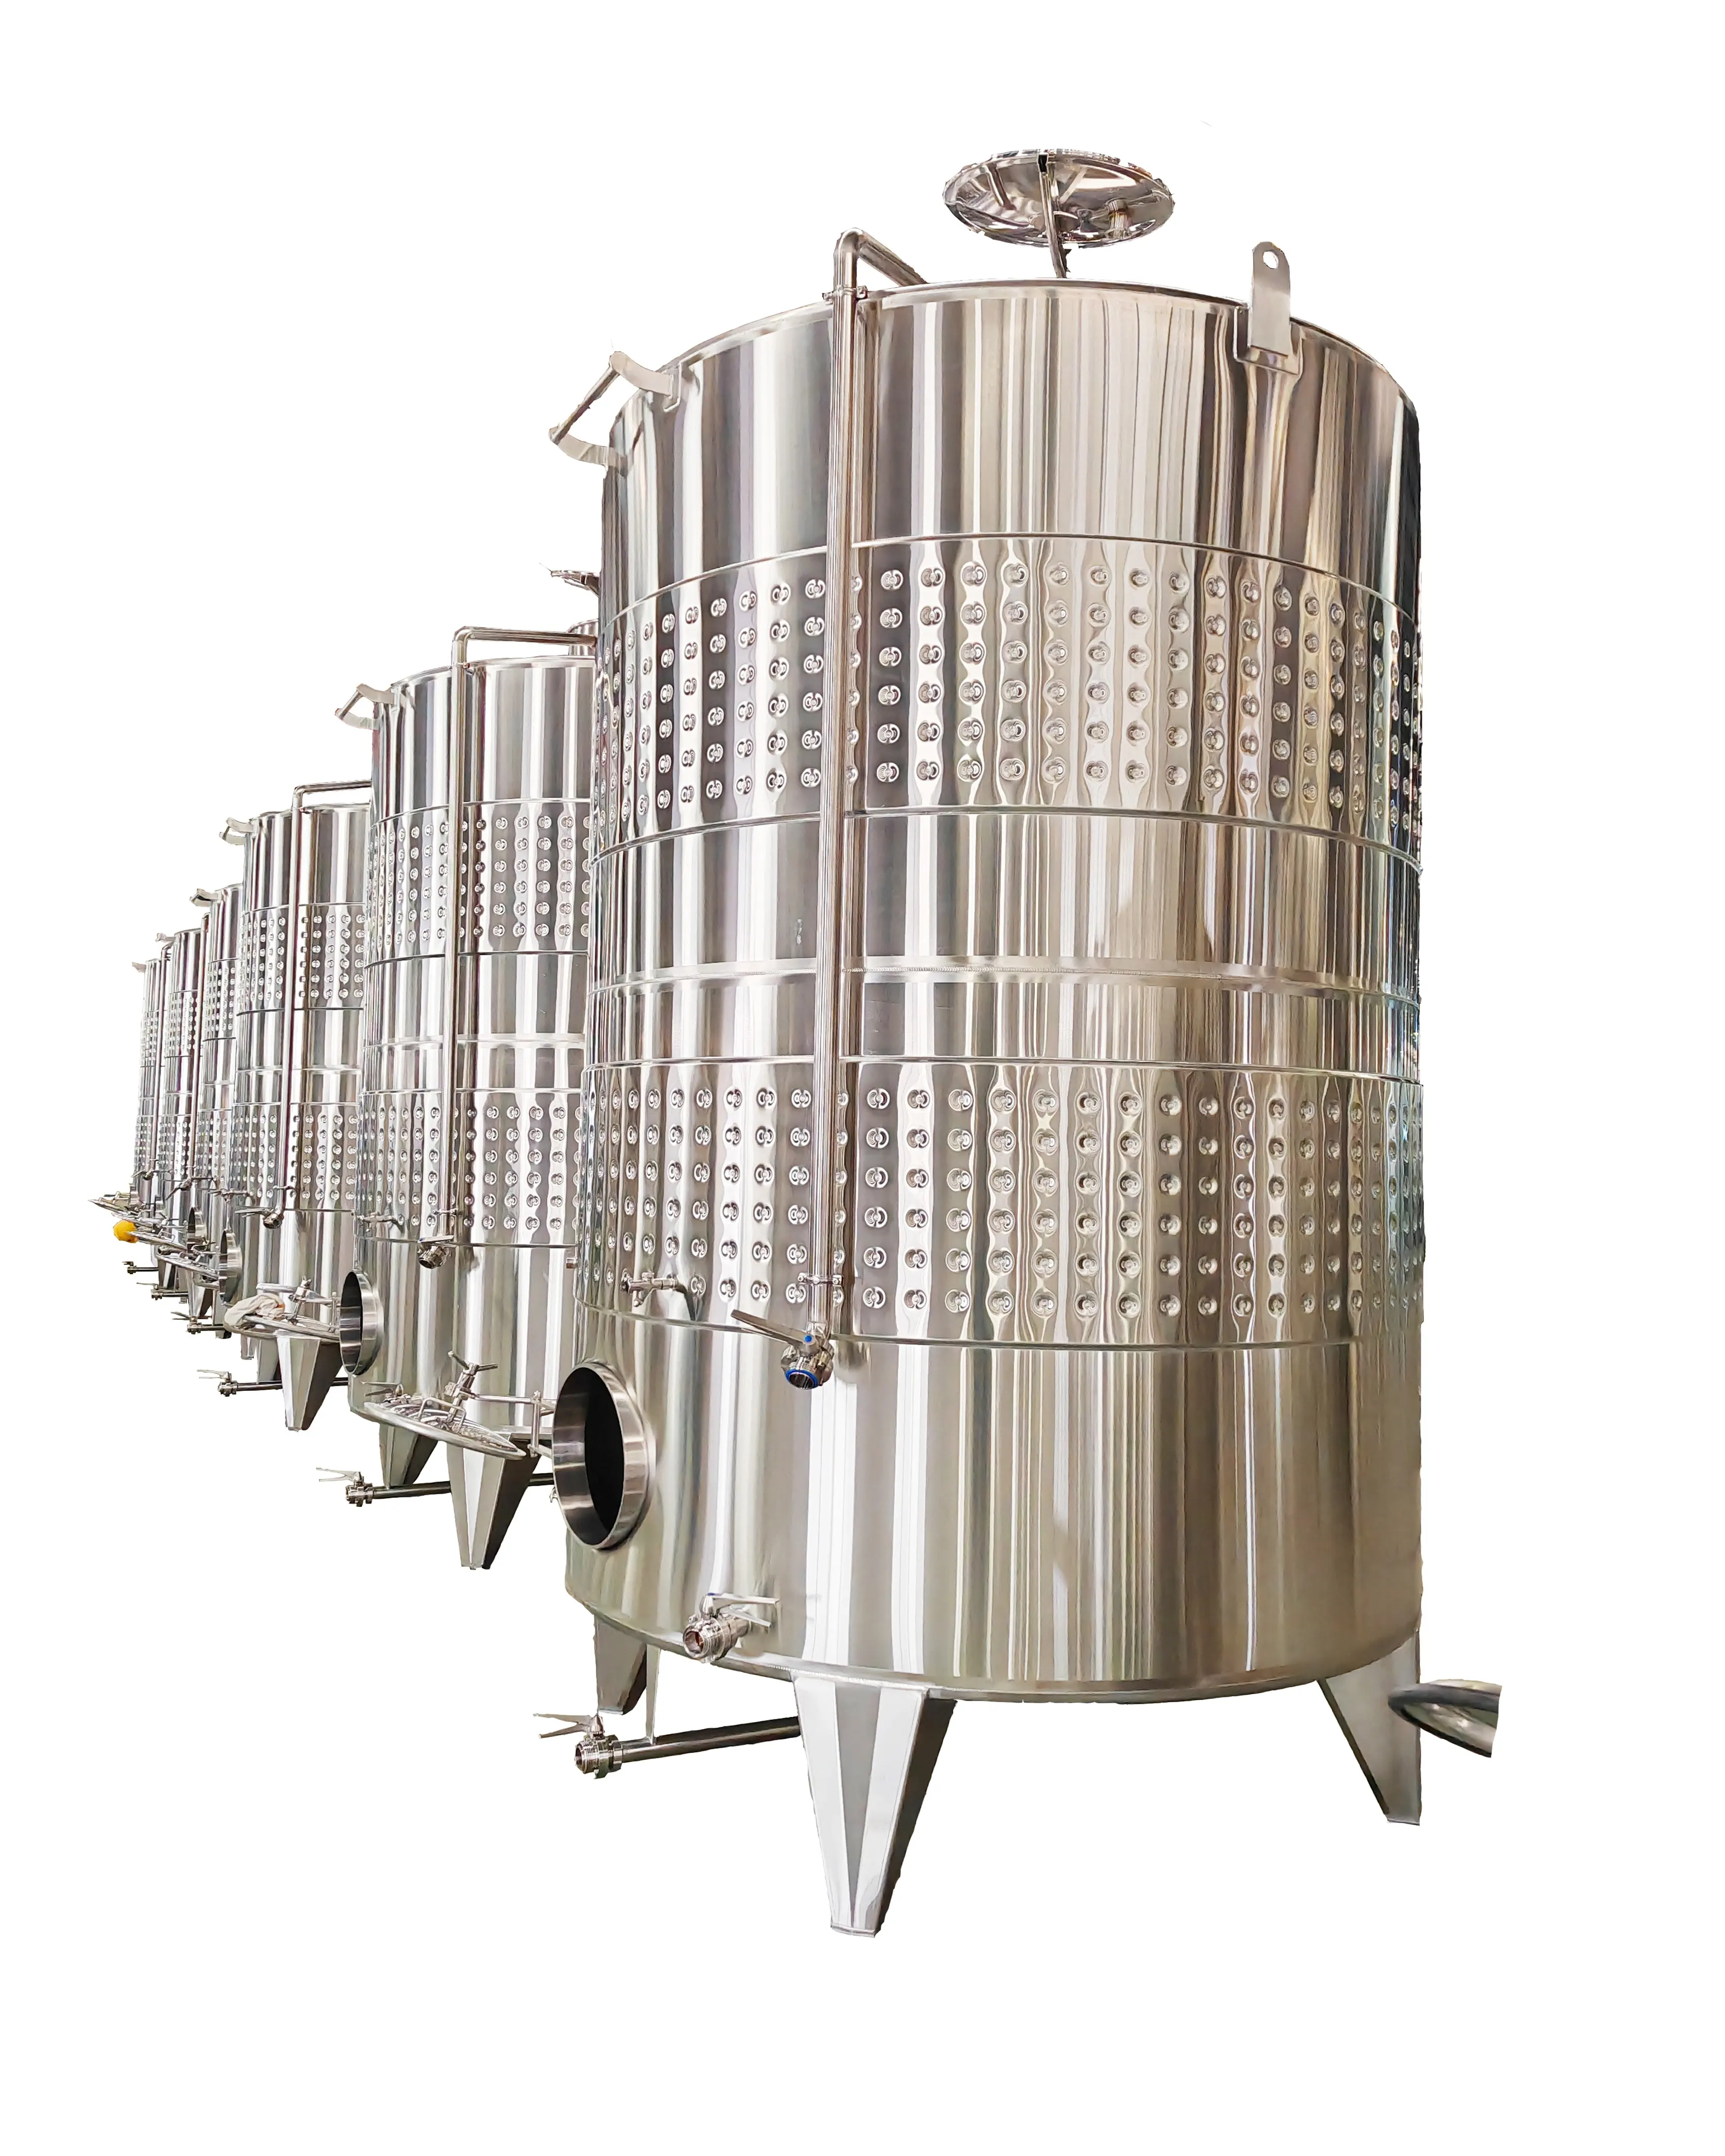 Buon prezzo del nuovo design produttore affidabile di attrezzature per la produzione di vino ad alta efficienza energetica